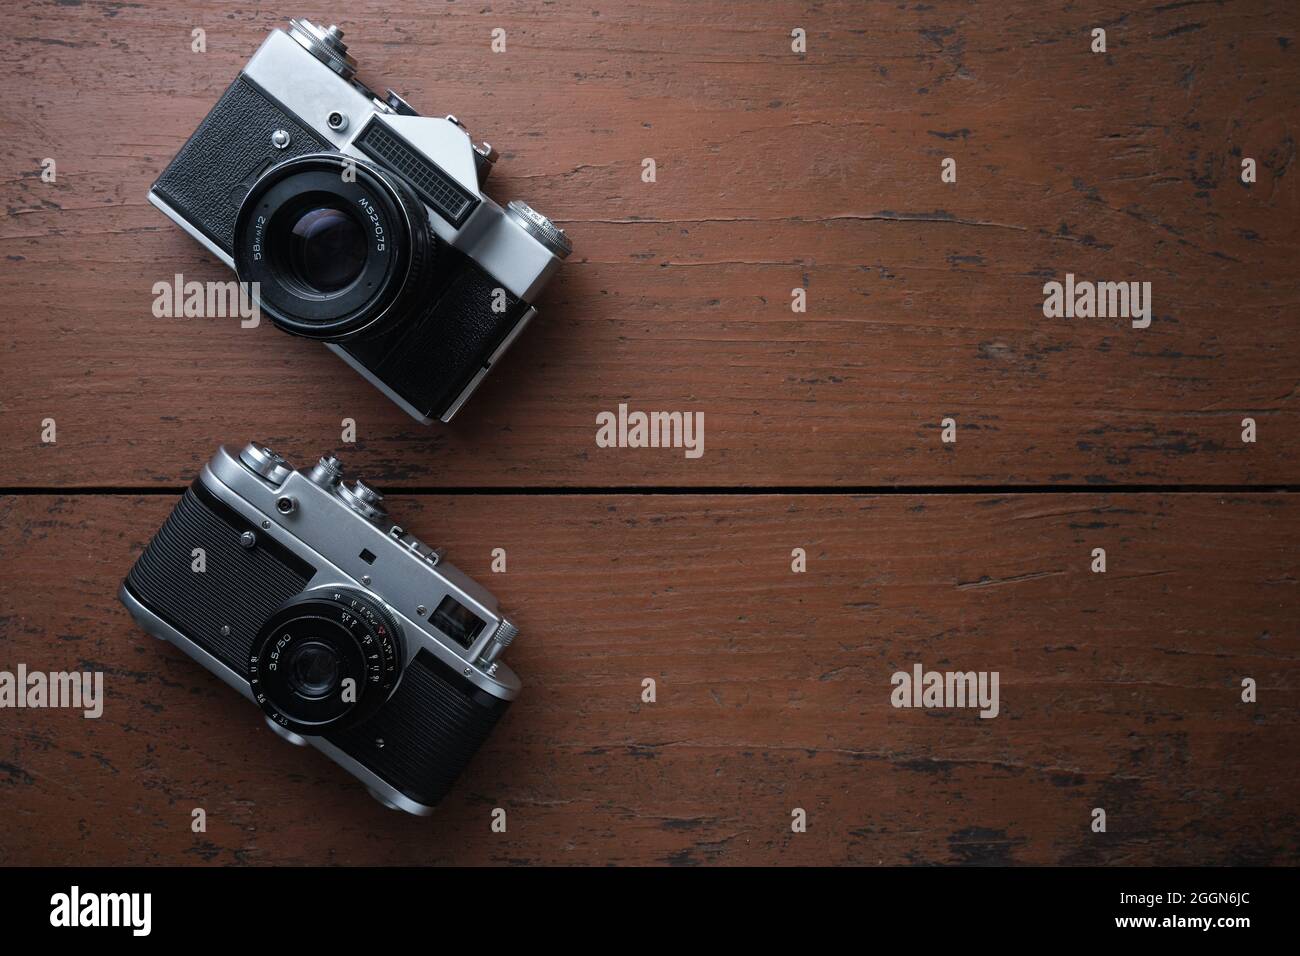 Vecchia telecamera a film metallico vintage da 35 mm, primo piano. Spazio per il testo. Vista dall'alto. La superficie ruvida in legno è di colore marrone. Foto Stock